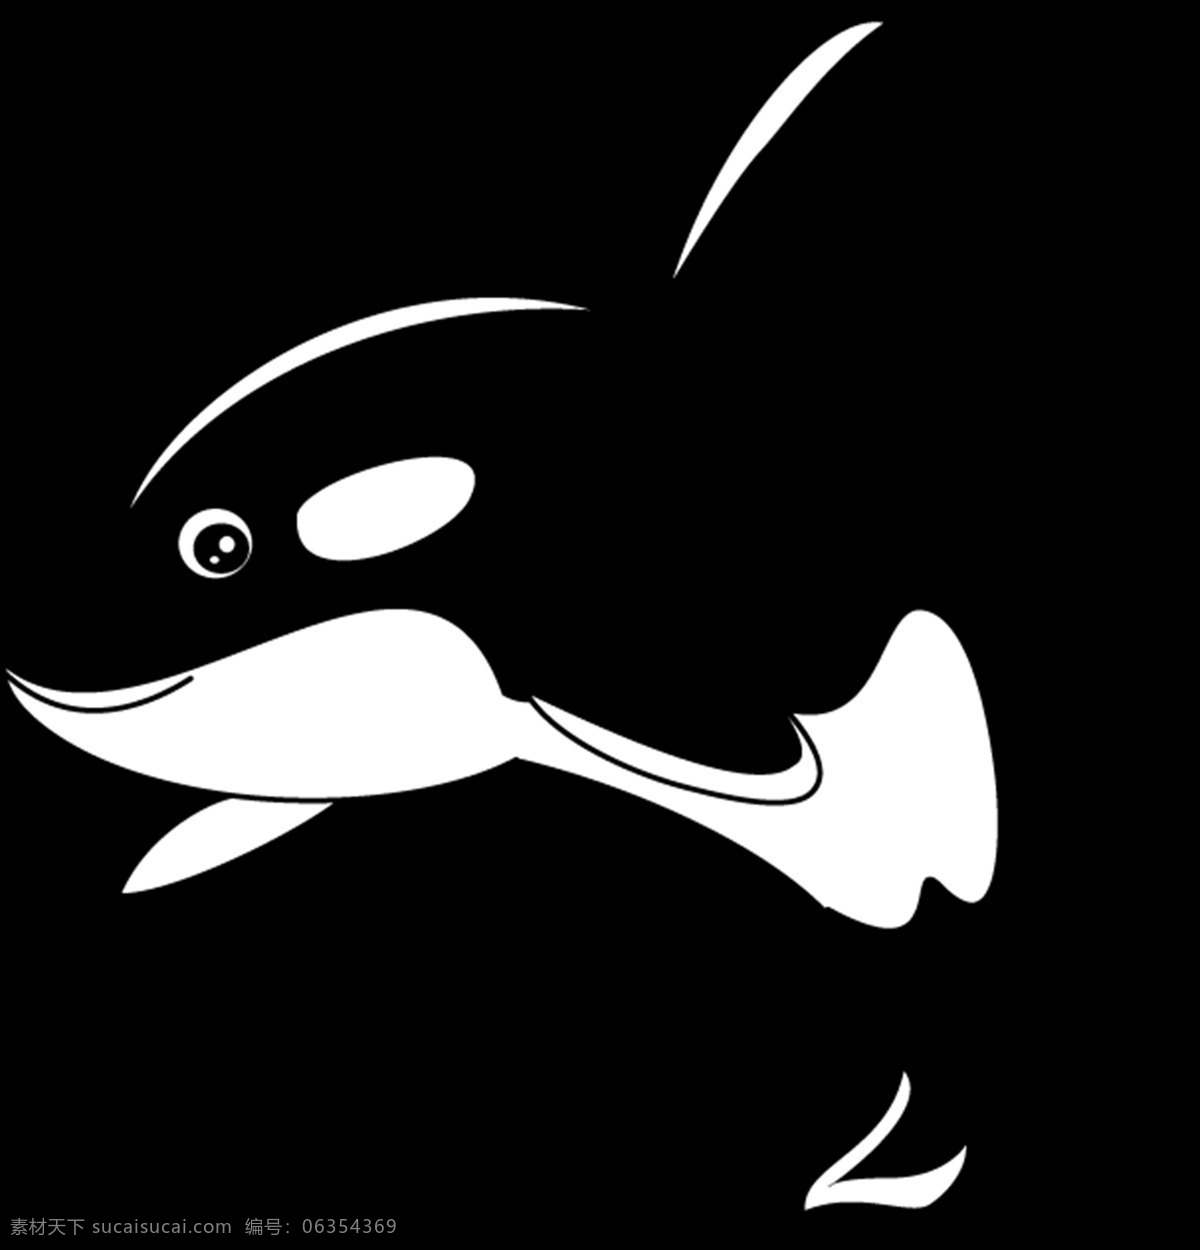 鲸鱼图片 鲸鱼 鲸 虎鲸 png图 透明图 免扣图 透明背景 透明底 抠图 生物世界 海洋生物